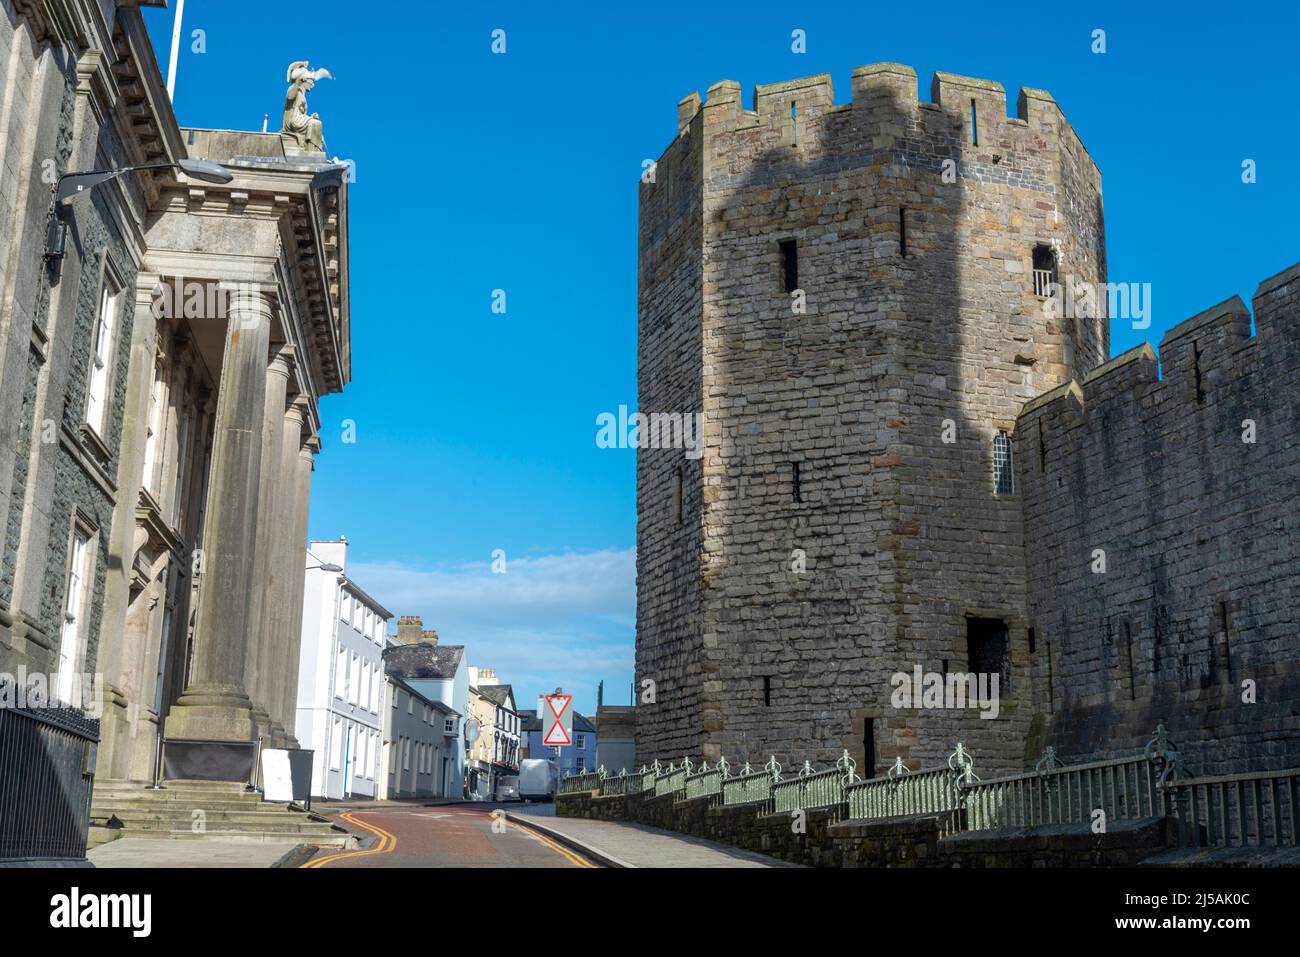 Eines der größten Gebäude des Mittelalters, die walisische Flagge, die hoch oben fliegt, riesige Struktur, dramatische Archtektur. Polygonale Türme, Adlerstatuen Stockfoto